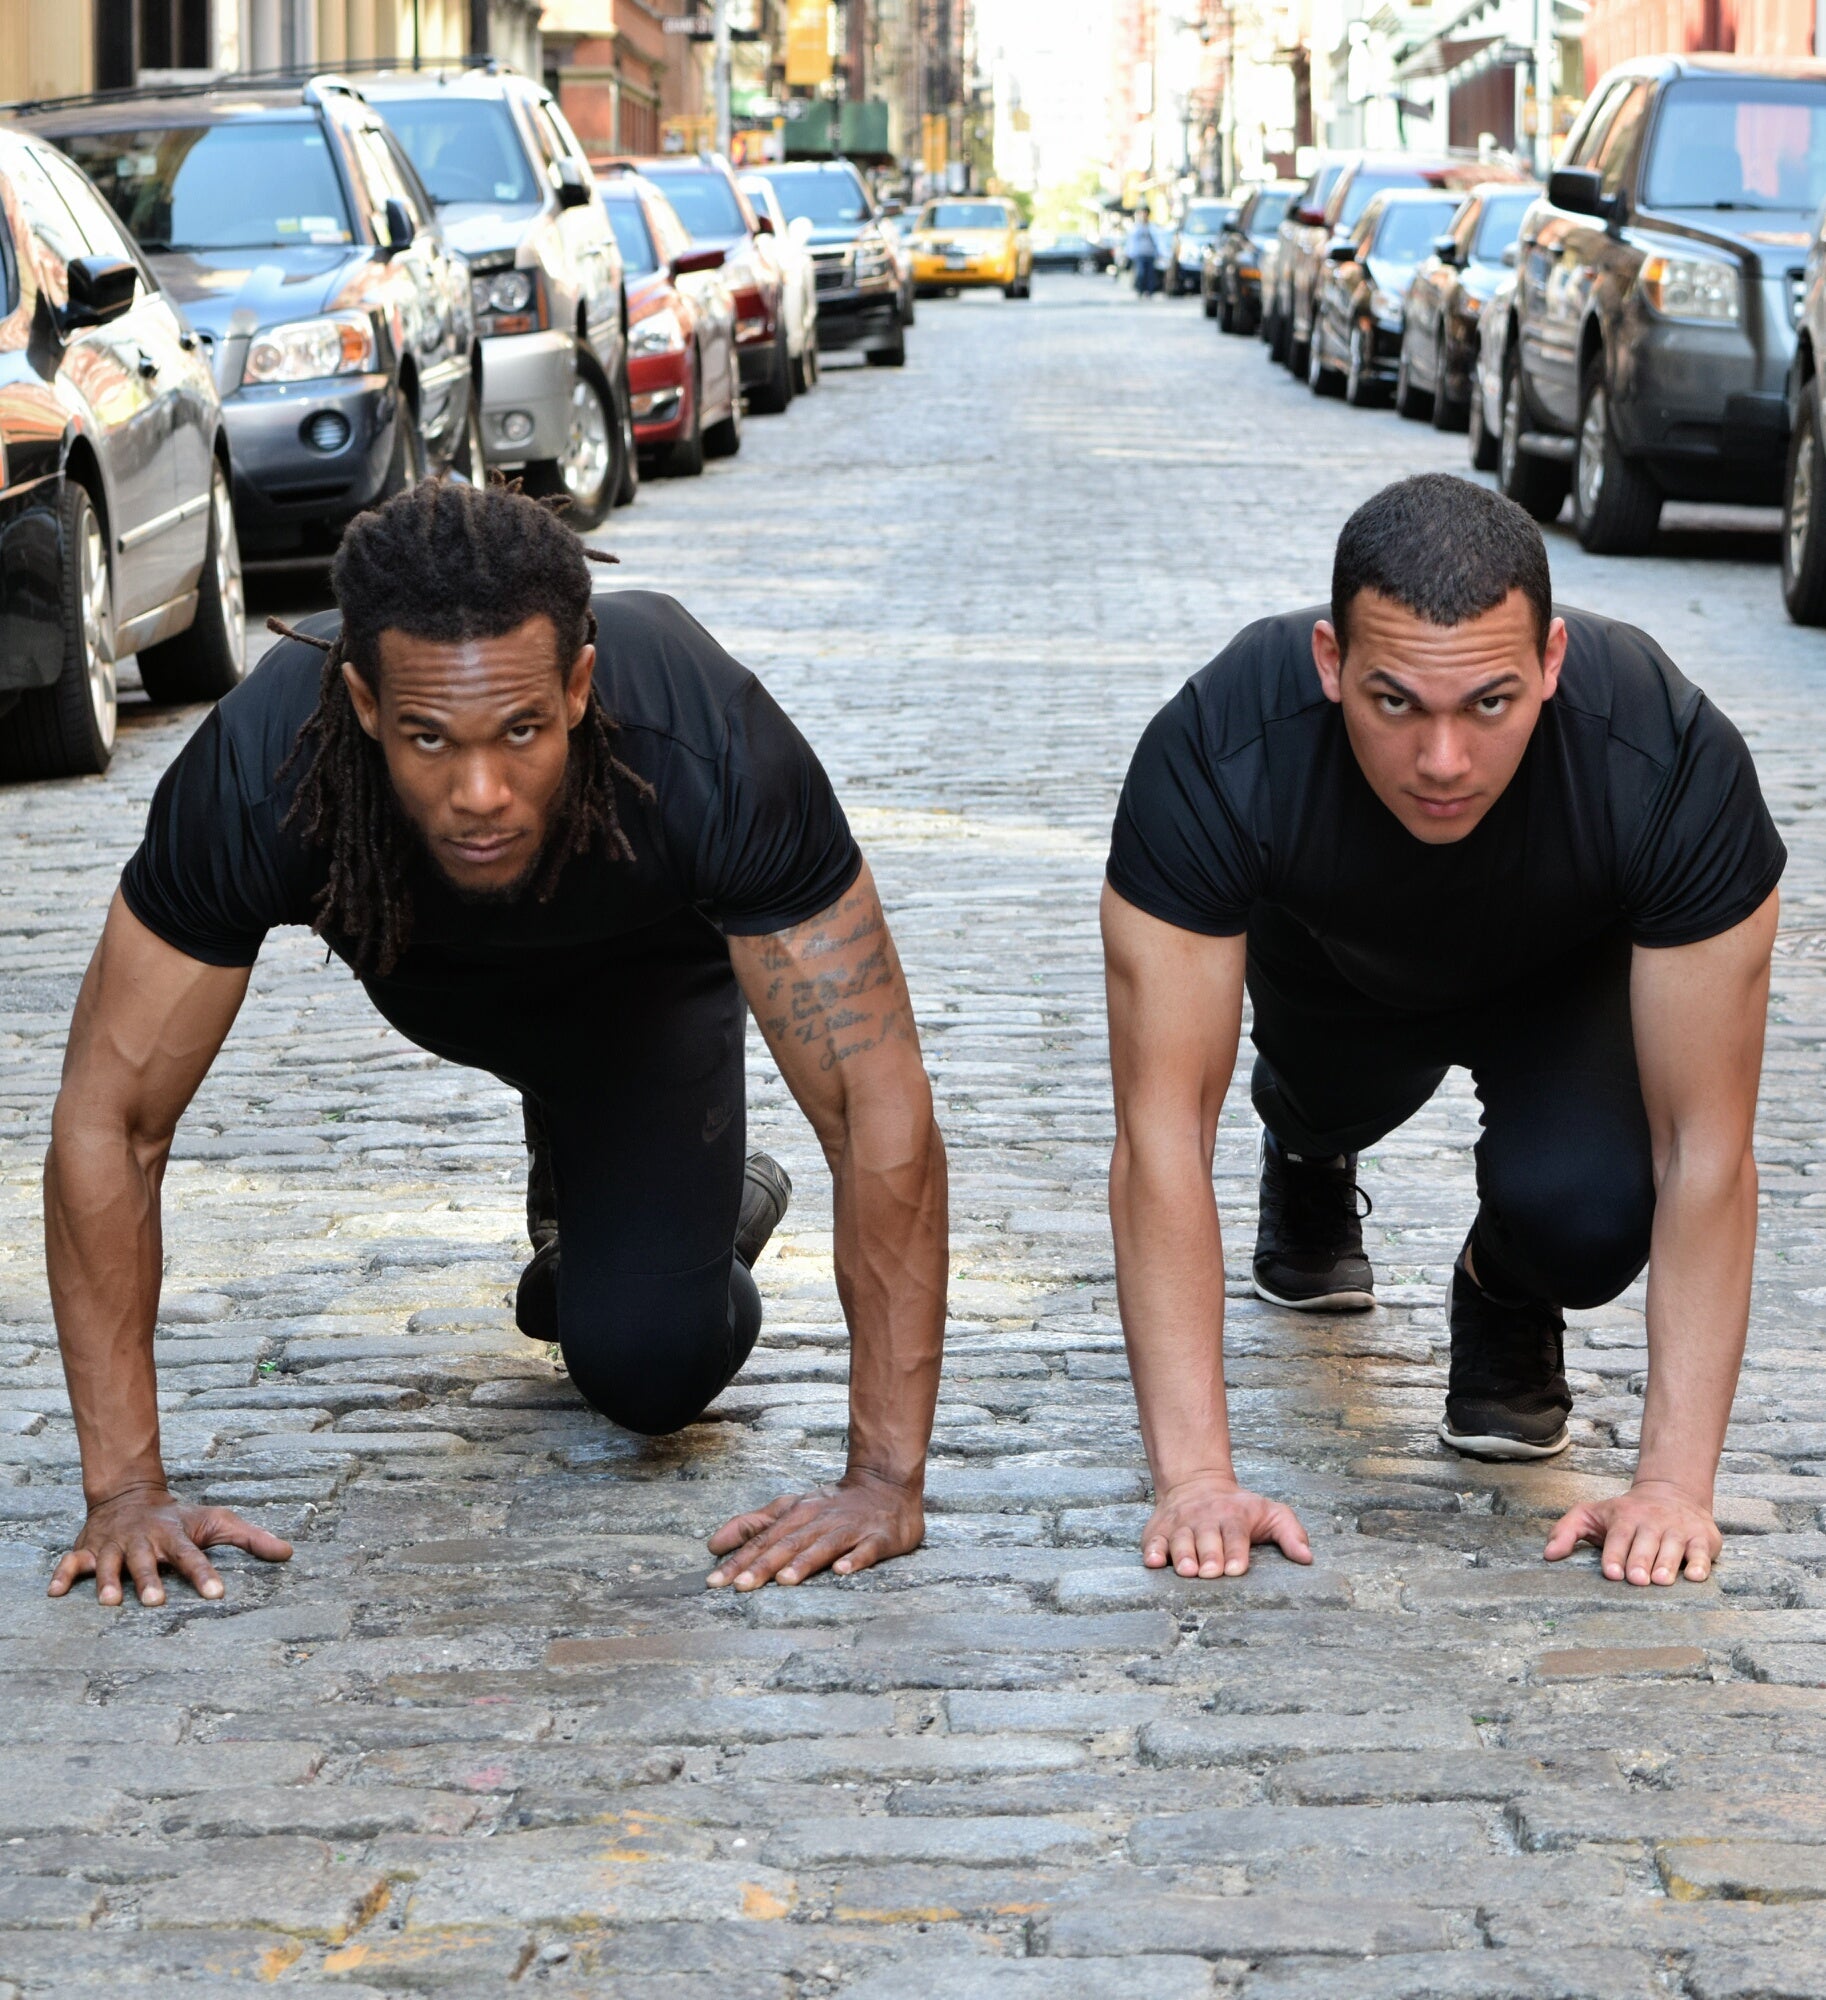 ConBody is New York's latest fitness craze